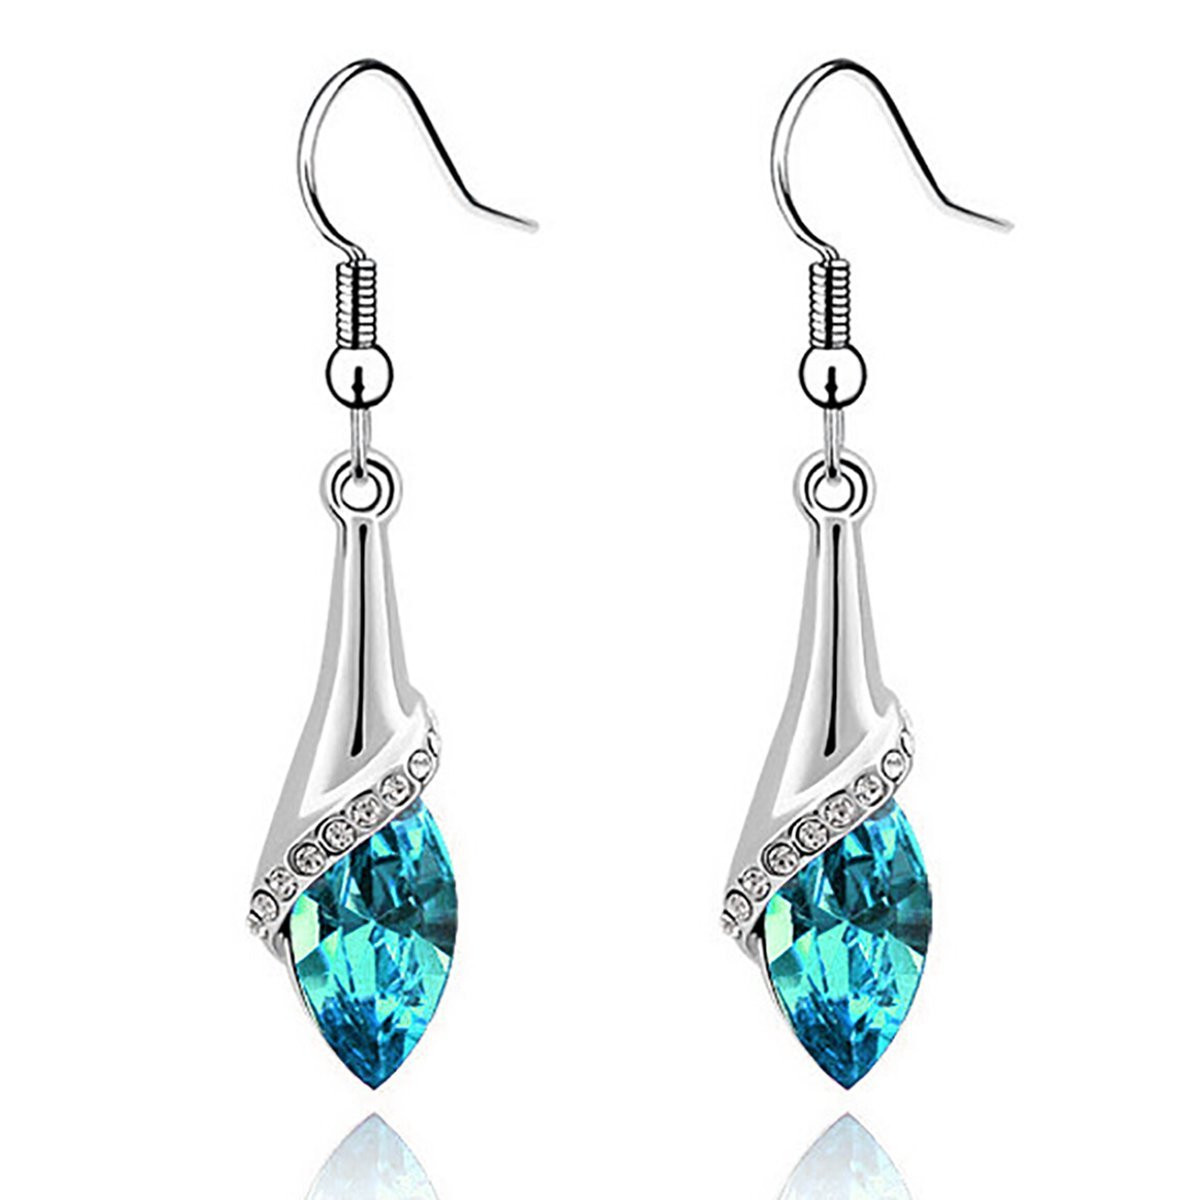 Crystal Teardrop Earrings
 Swarovski Elements Crystal Teardrop Earrings ly $4 55